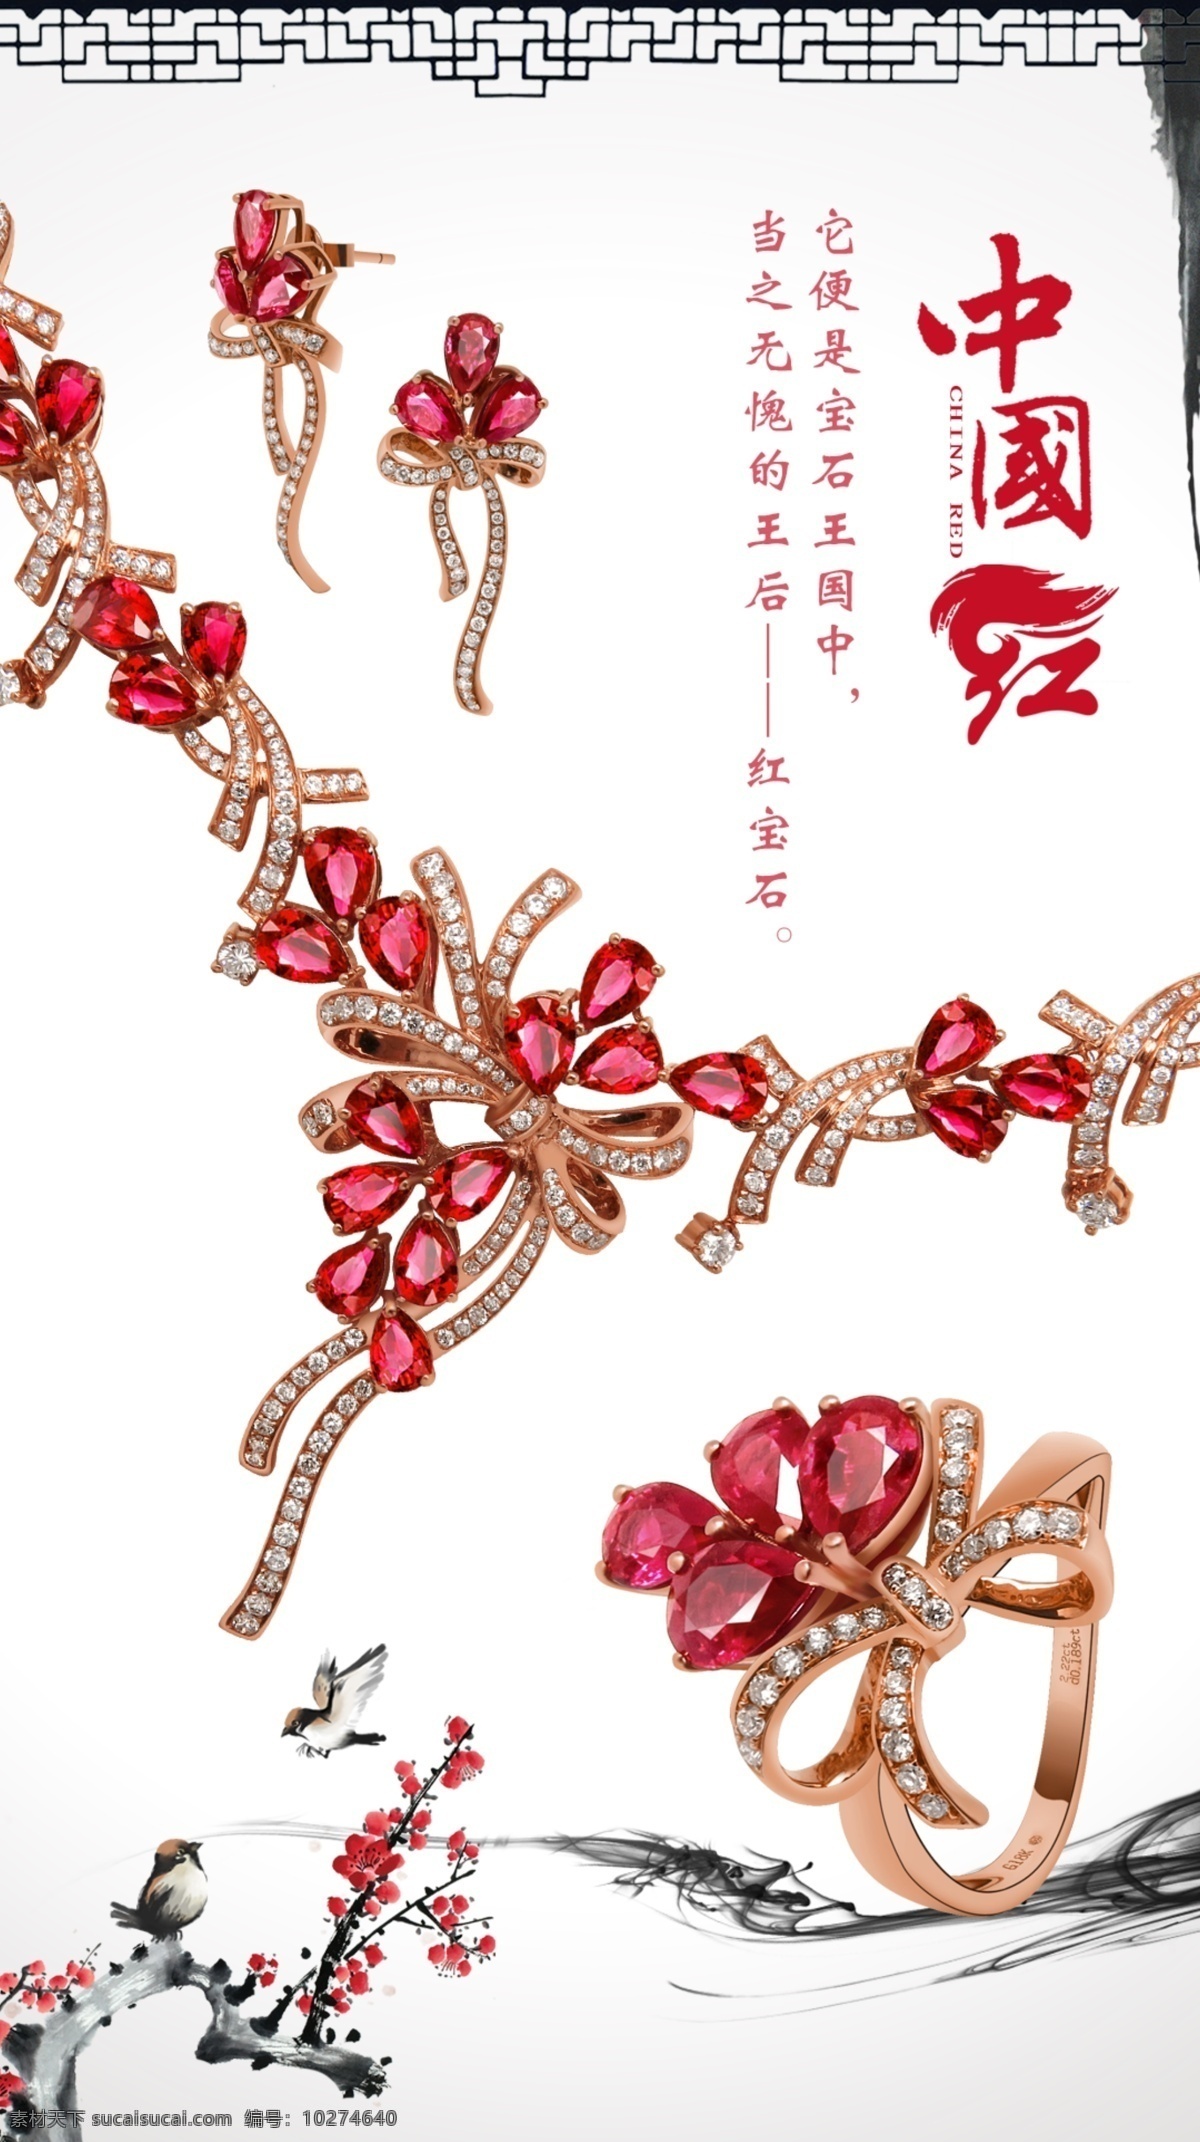 红宝石 系列 海报 珠宝 中国风 水墨画 小鸟 中国红梅花 原创